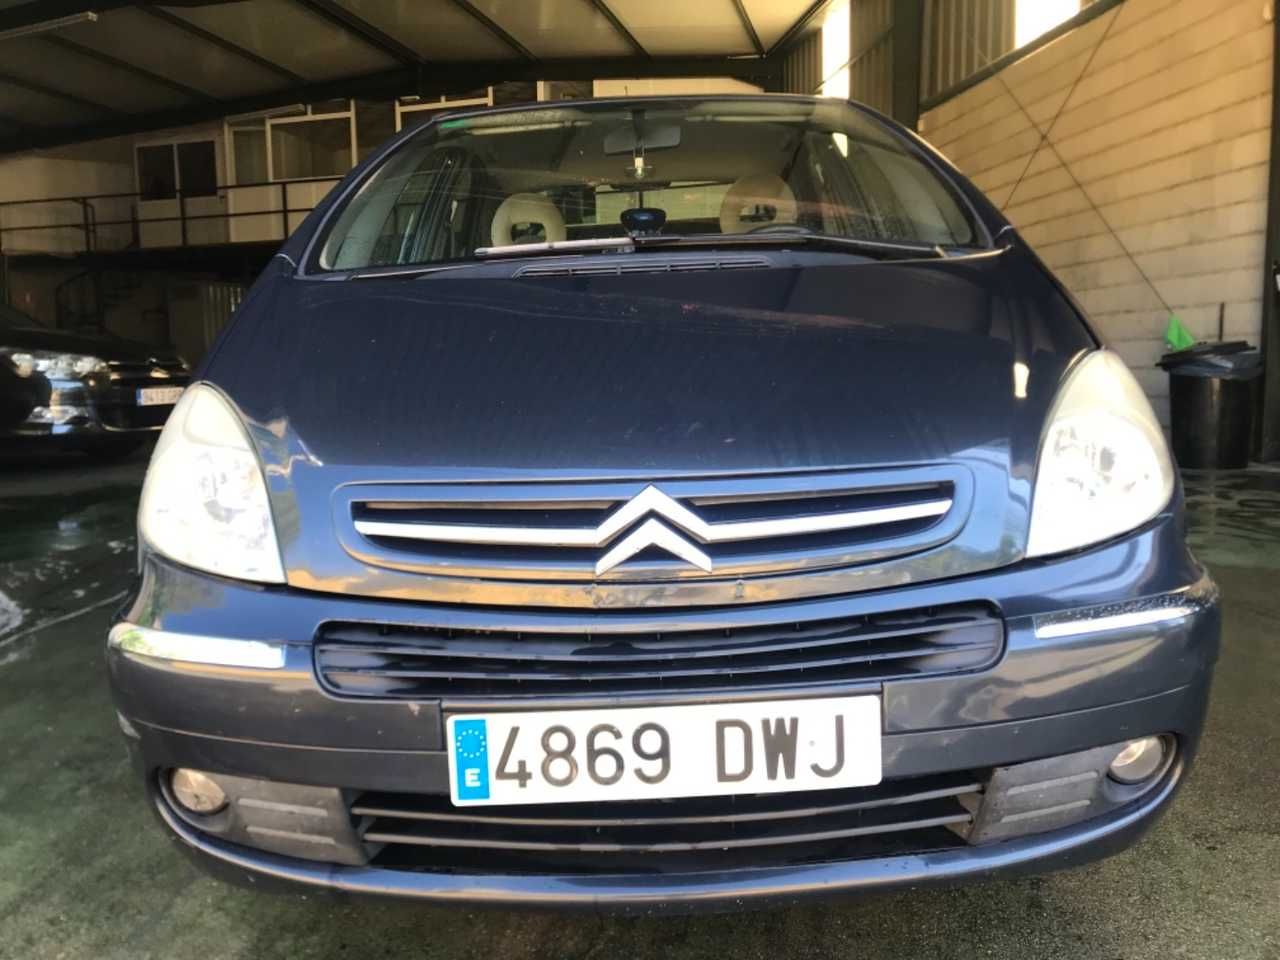 Foto Citroën Xsara Picasso 3